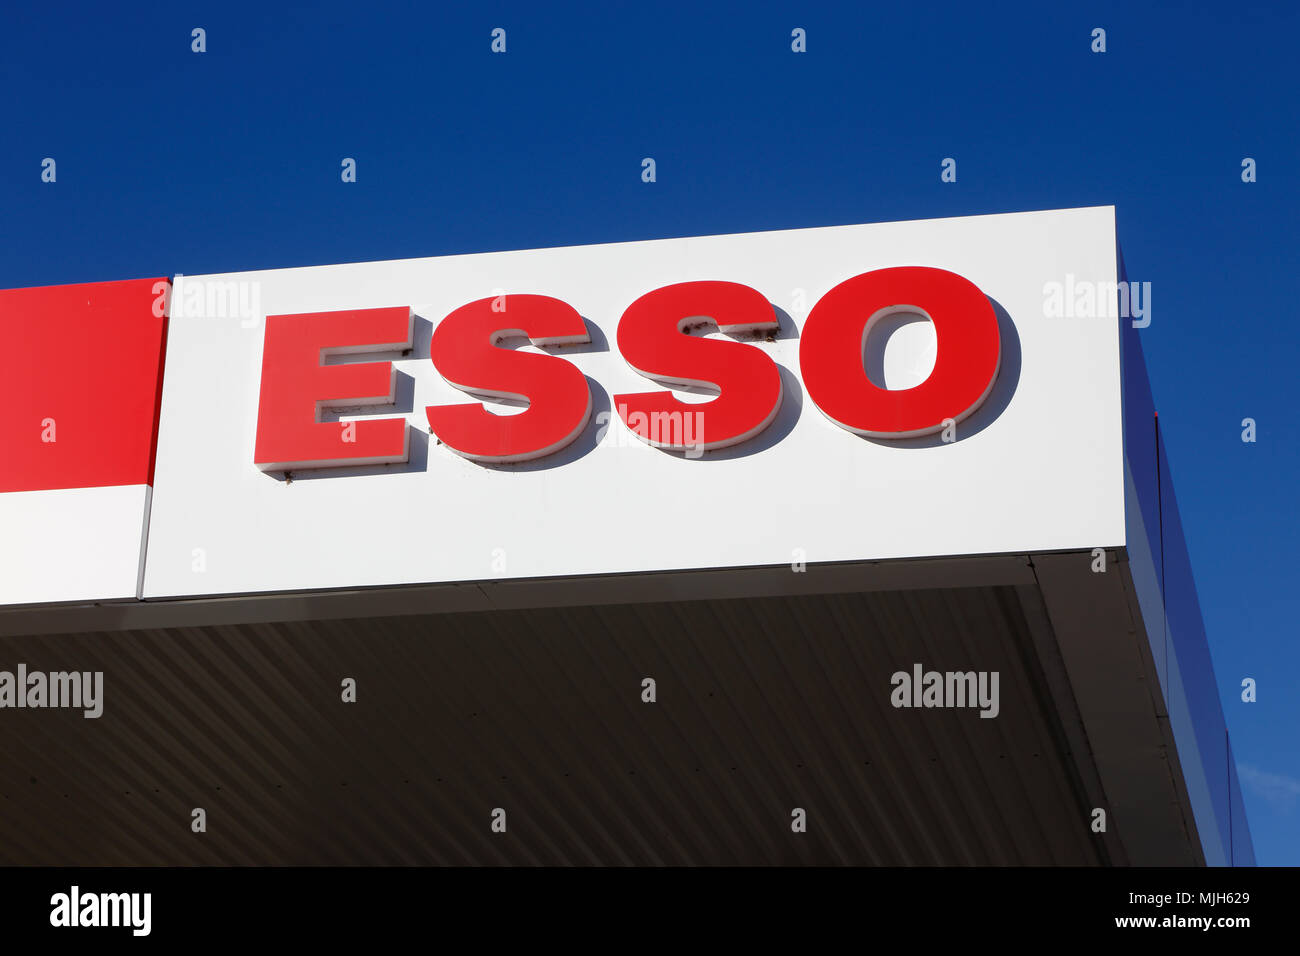 Elverum, Norvège - 3 octobre 2016 : une station service Esso pterol avec toit de protection du logo. Banque D'Images